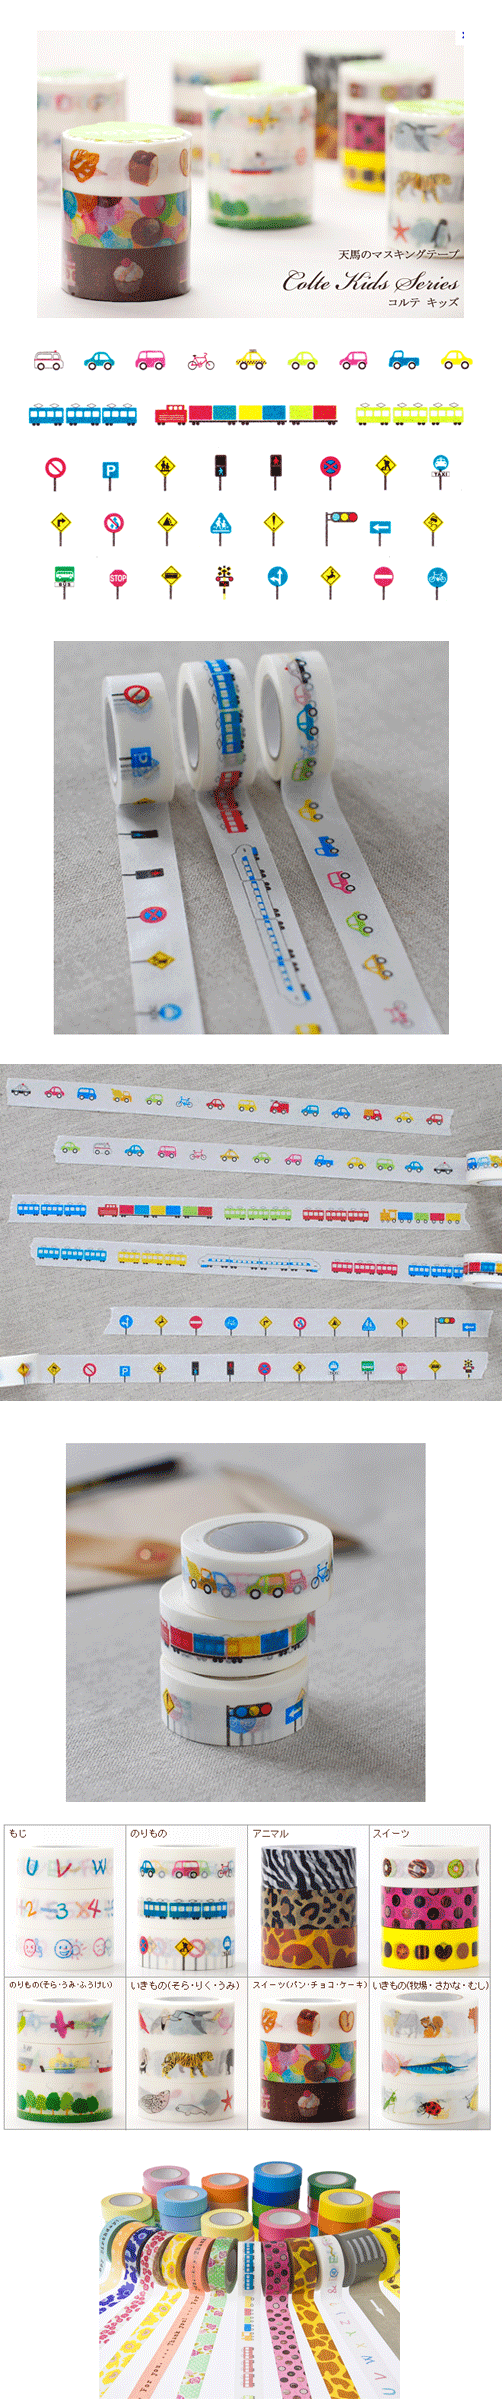 Colte Kids Vehicles Tape Set [kids stationery, colte kids stationery, lovely stationery, gorgeous stationery]